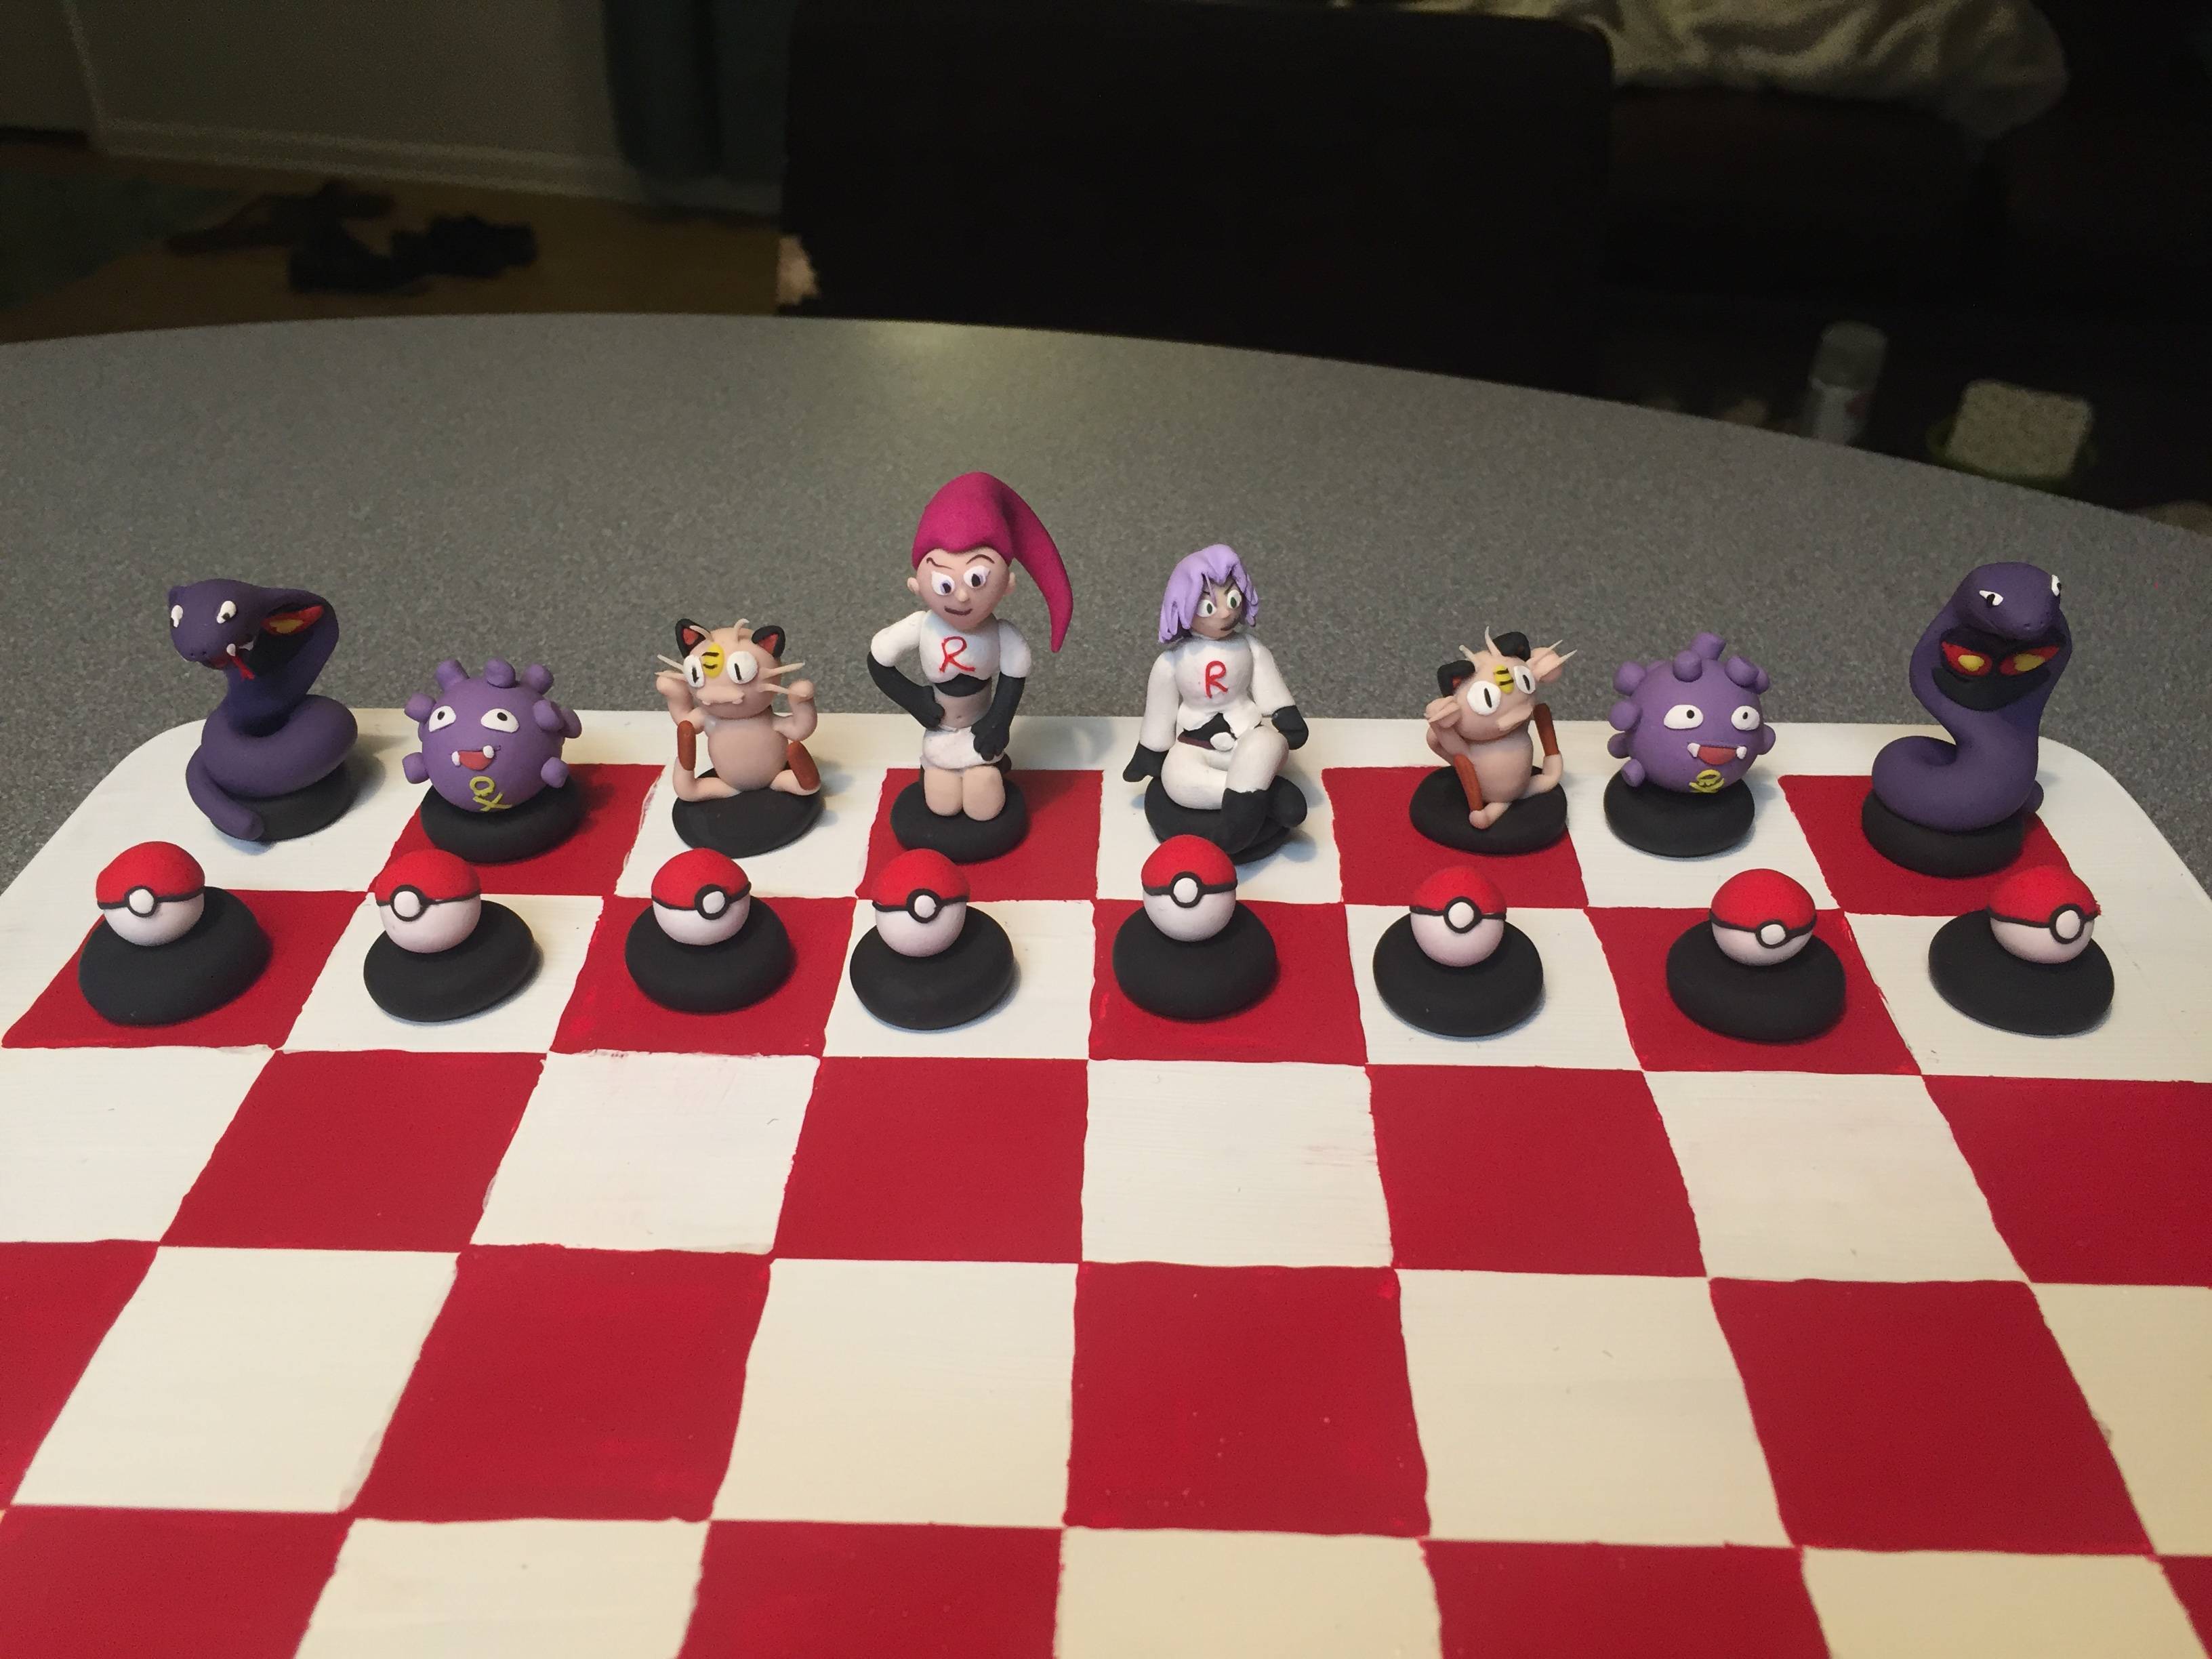 The Pokemon chess set